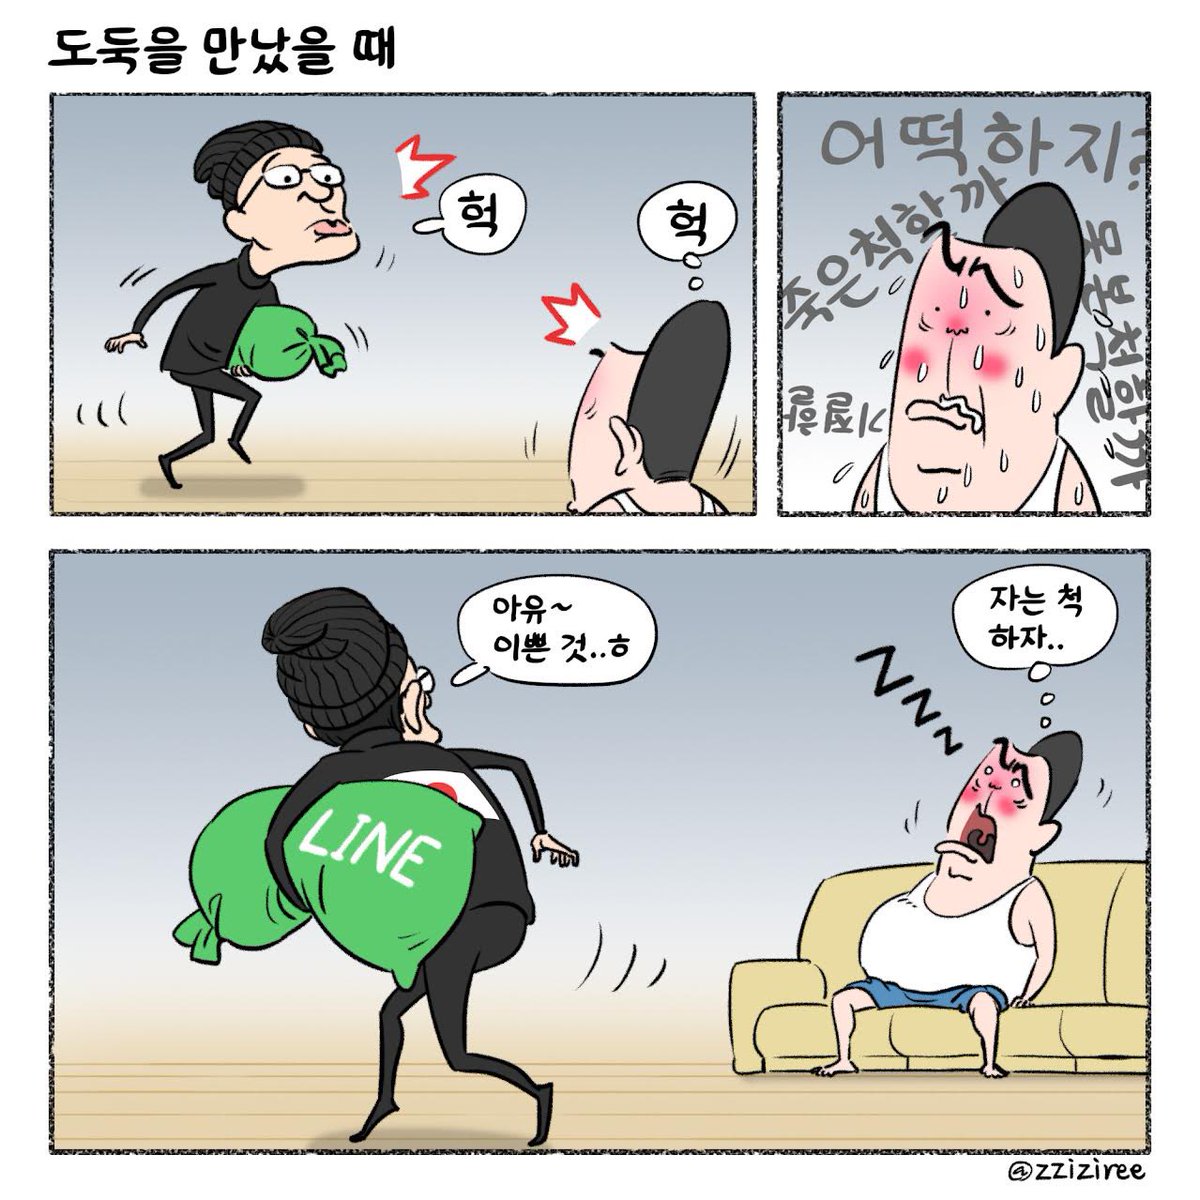 [딴지만평]도둑을 만났을 때 ddanzi.com/ddanziNews/809… #딴지 #딴지만평 #윤석열 #라인